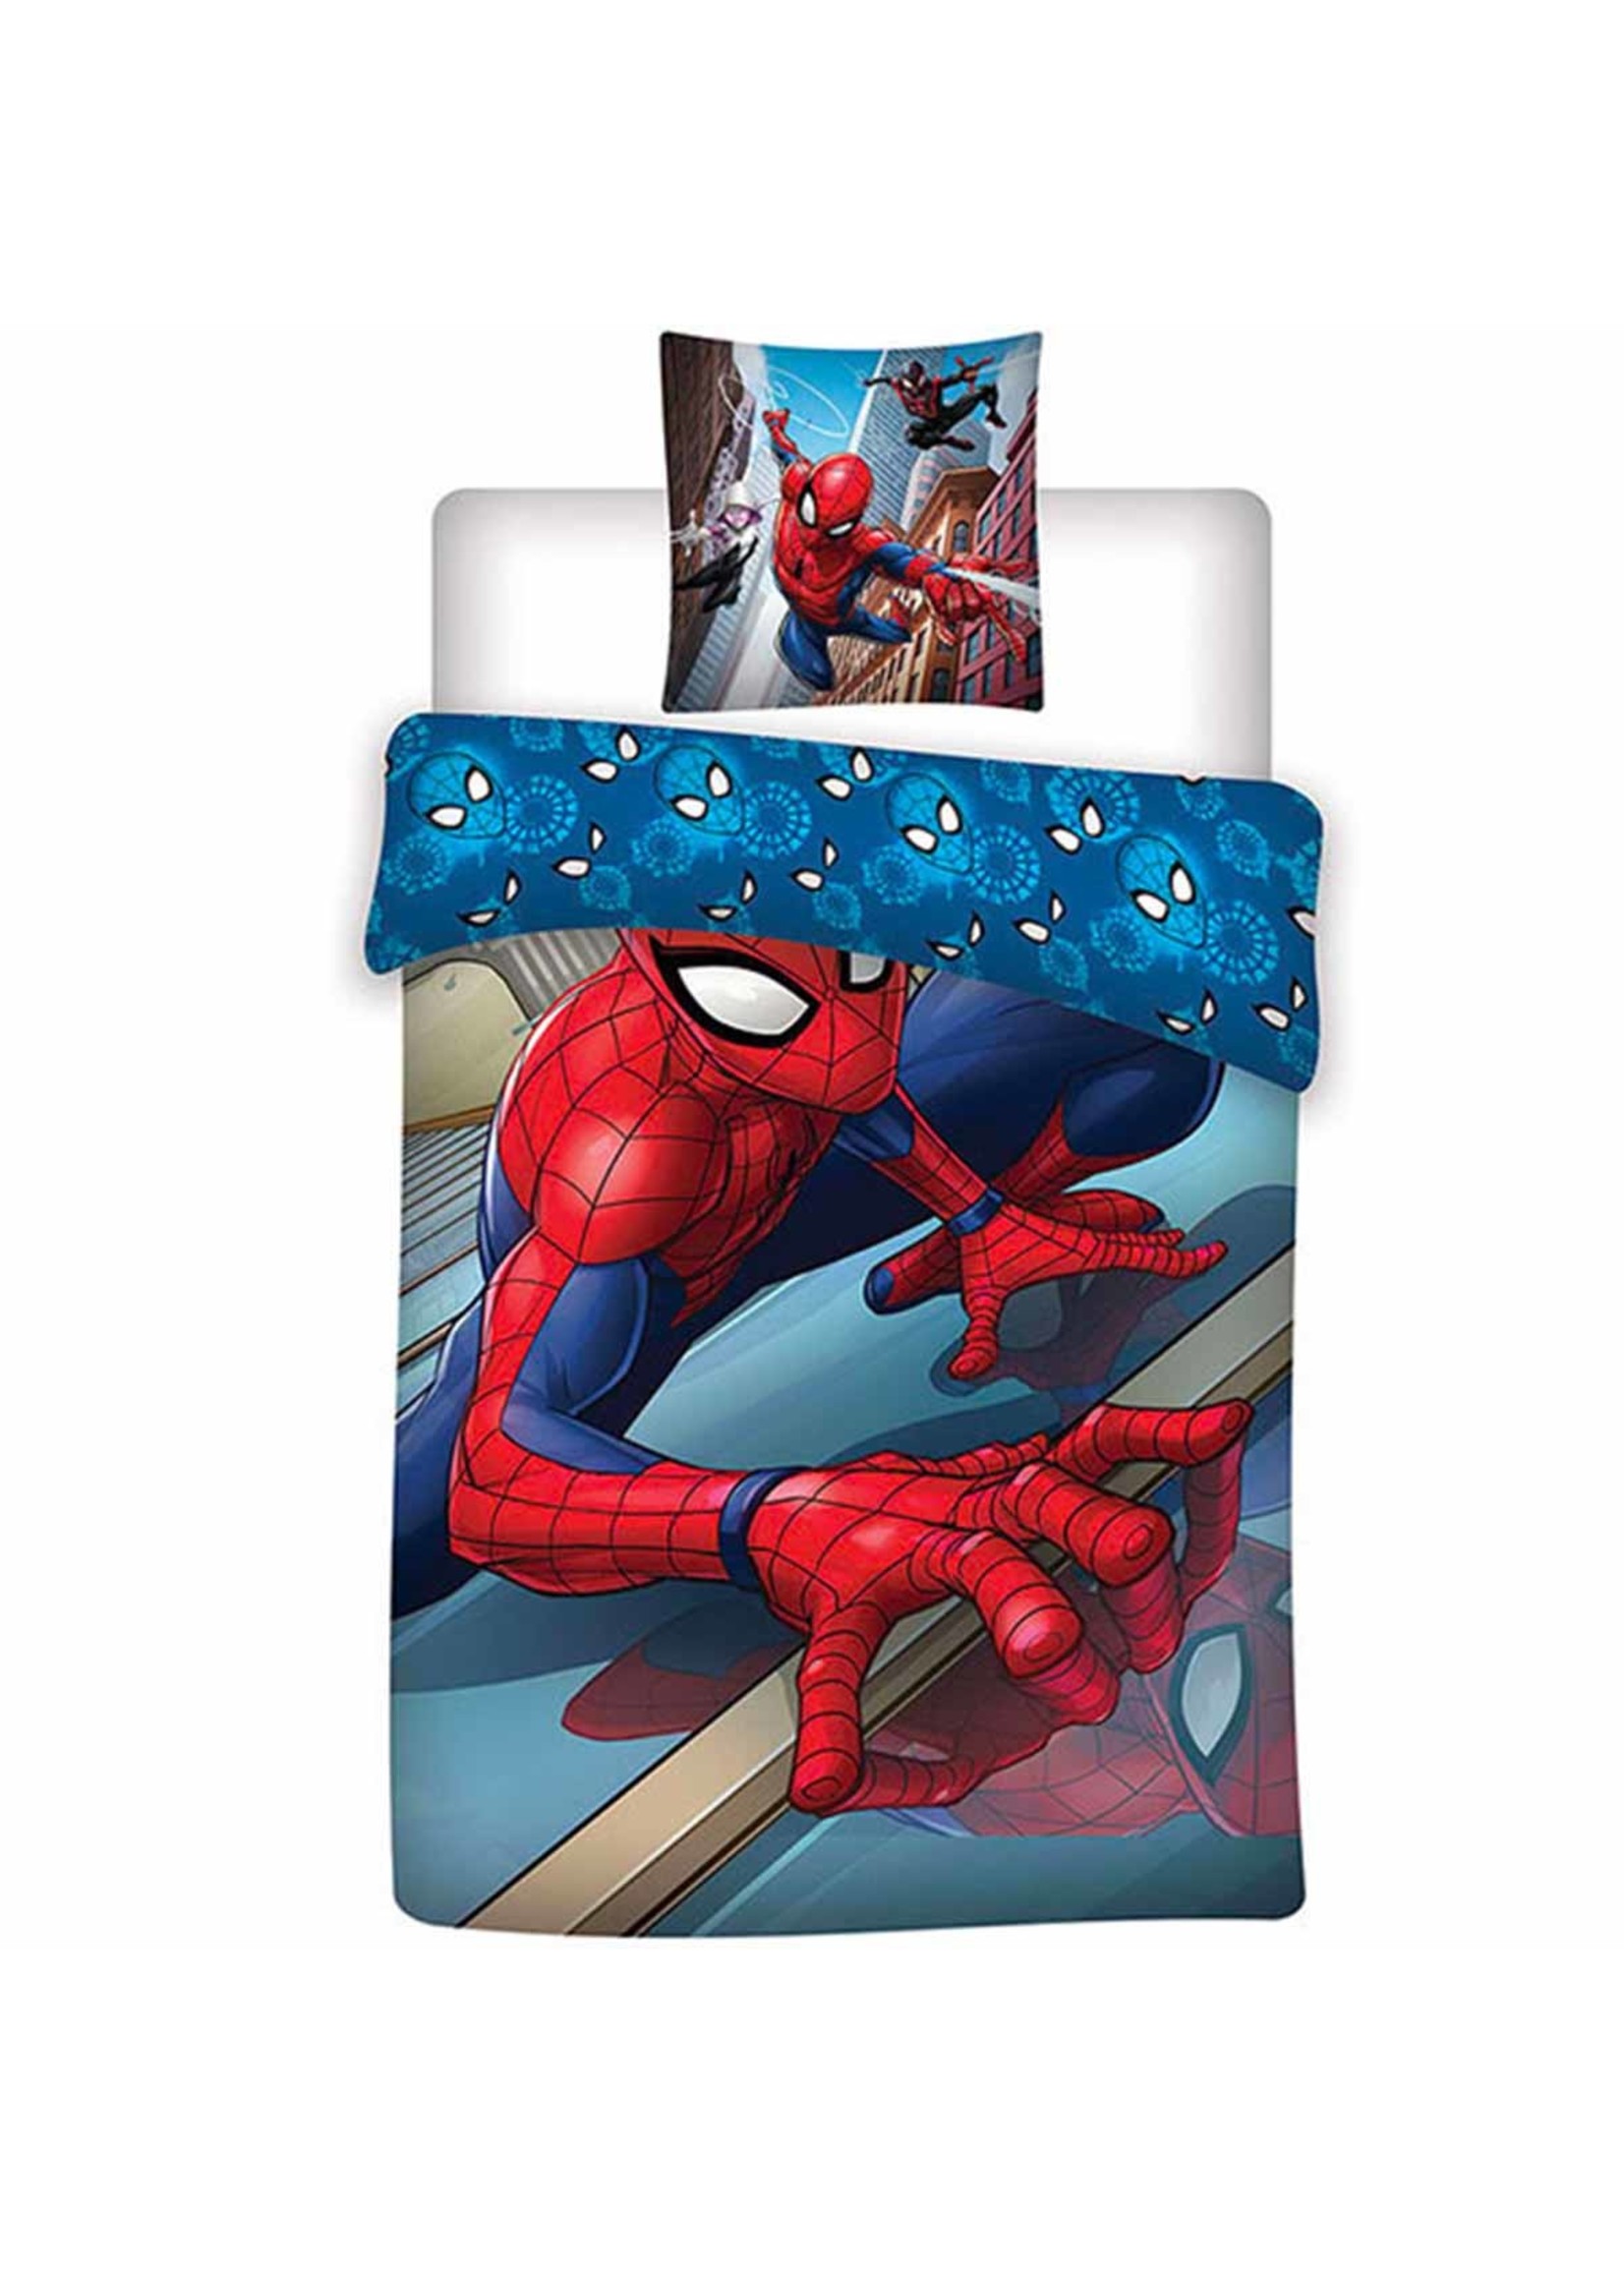 Marvel Spiderman Duvet cover from Marvel blue